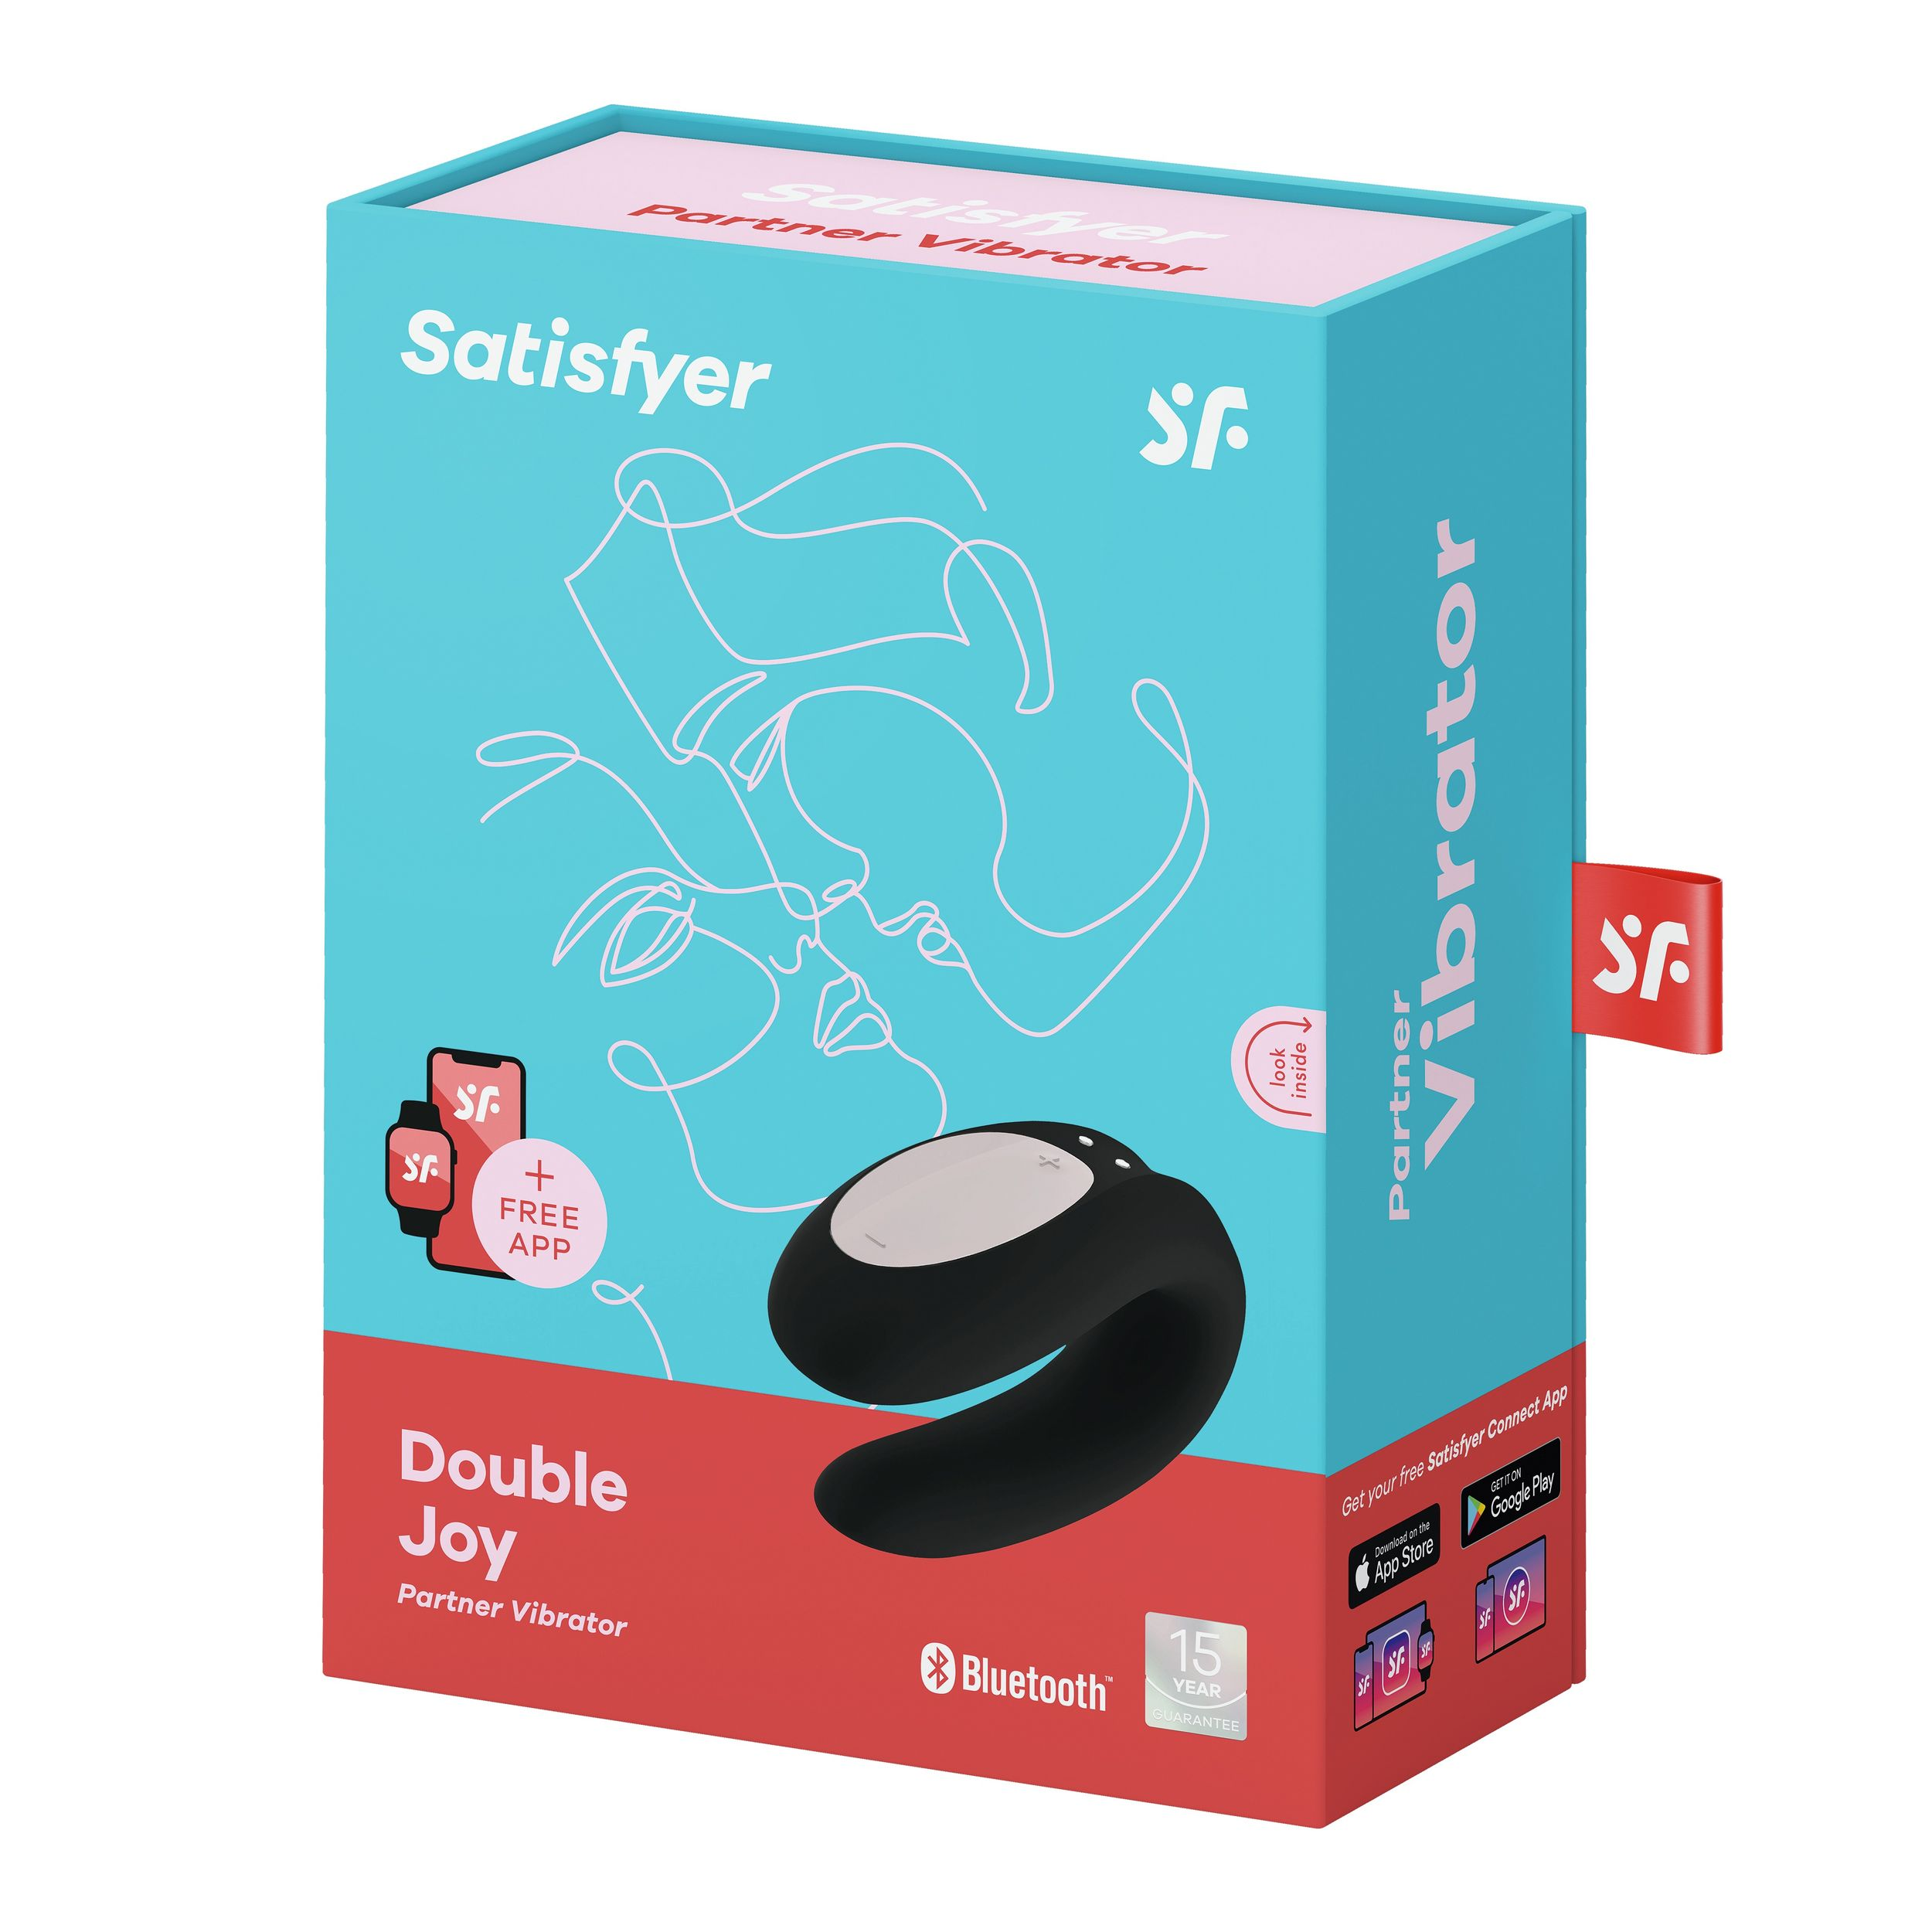 SATISFYER Satisfyer Double Joy Paarvibrator paarvibratoren - Schwarz